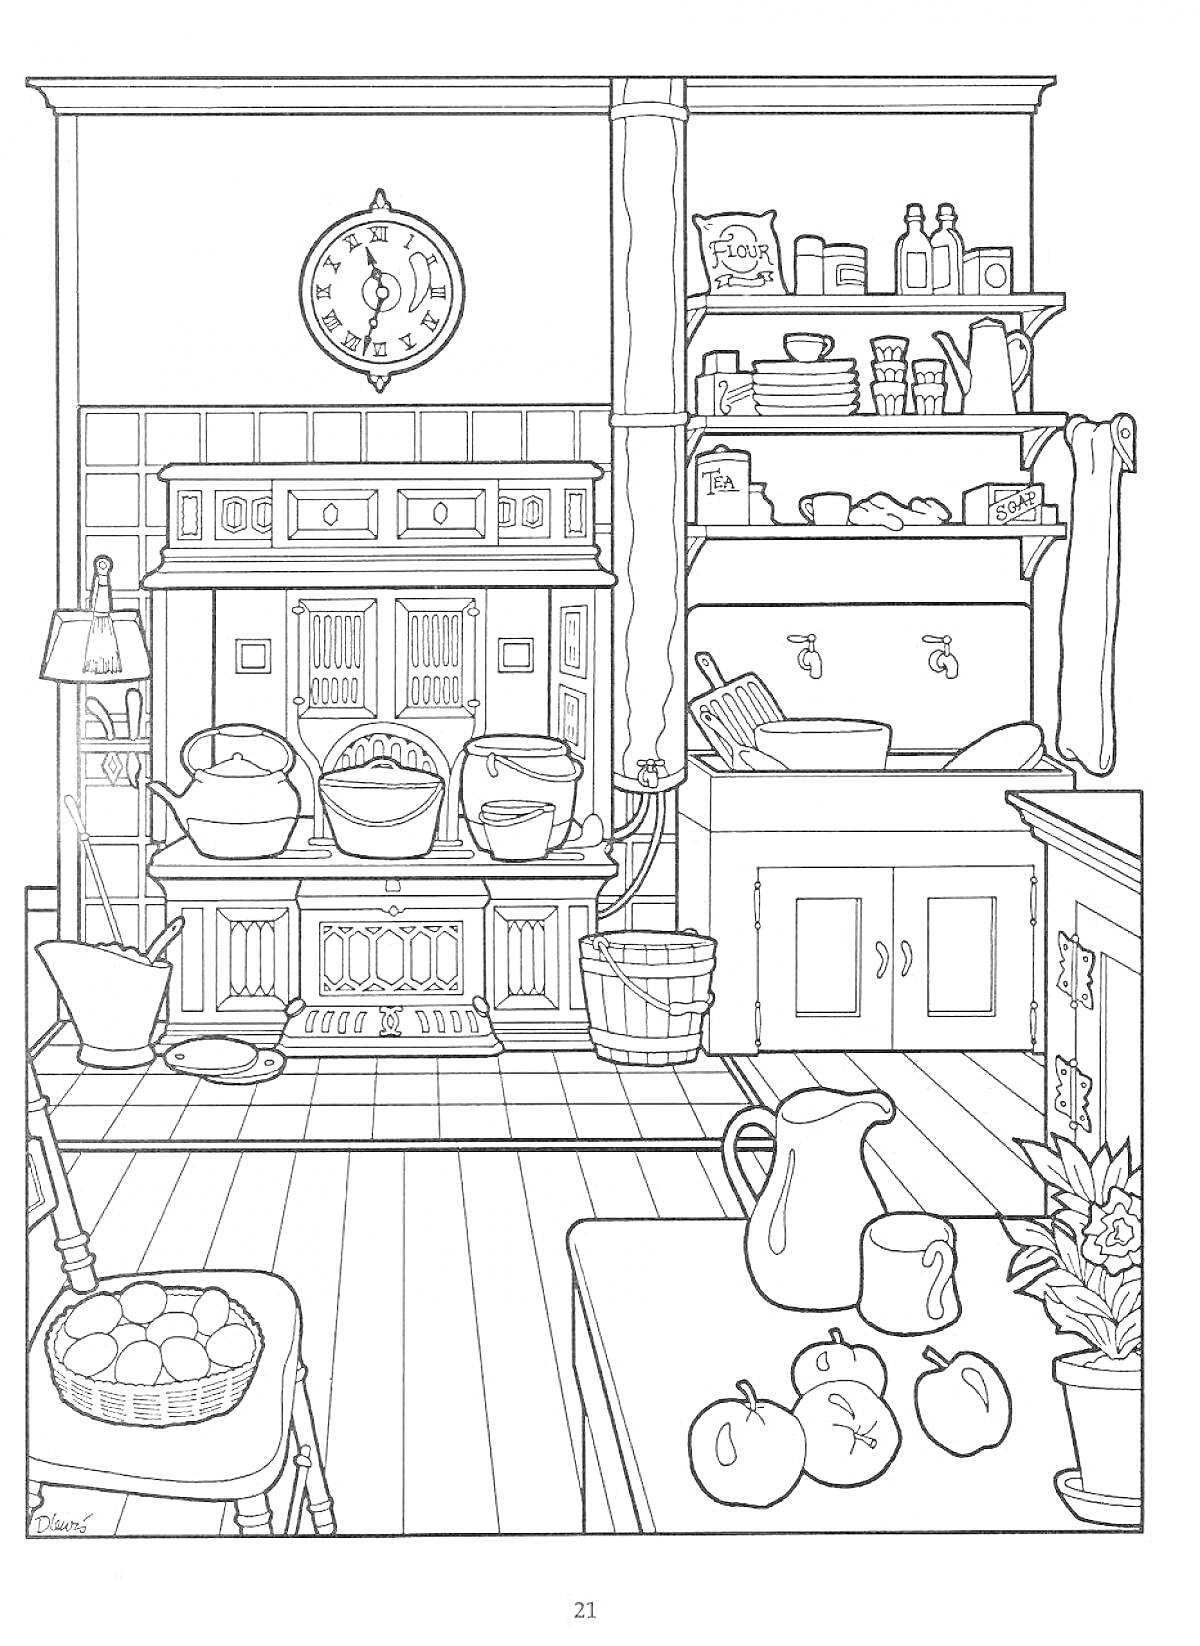 Раскраска Кухня в кукольном домике с печью, кастрюлями, стулом с плетеной корзиной, столом с кувшином и фруктами, полками с посудой и продуктами, ведром, шваброй и цветком